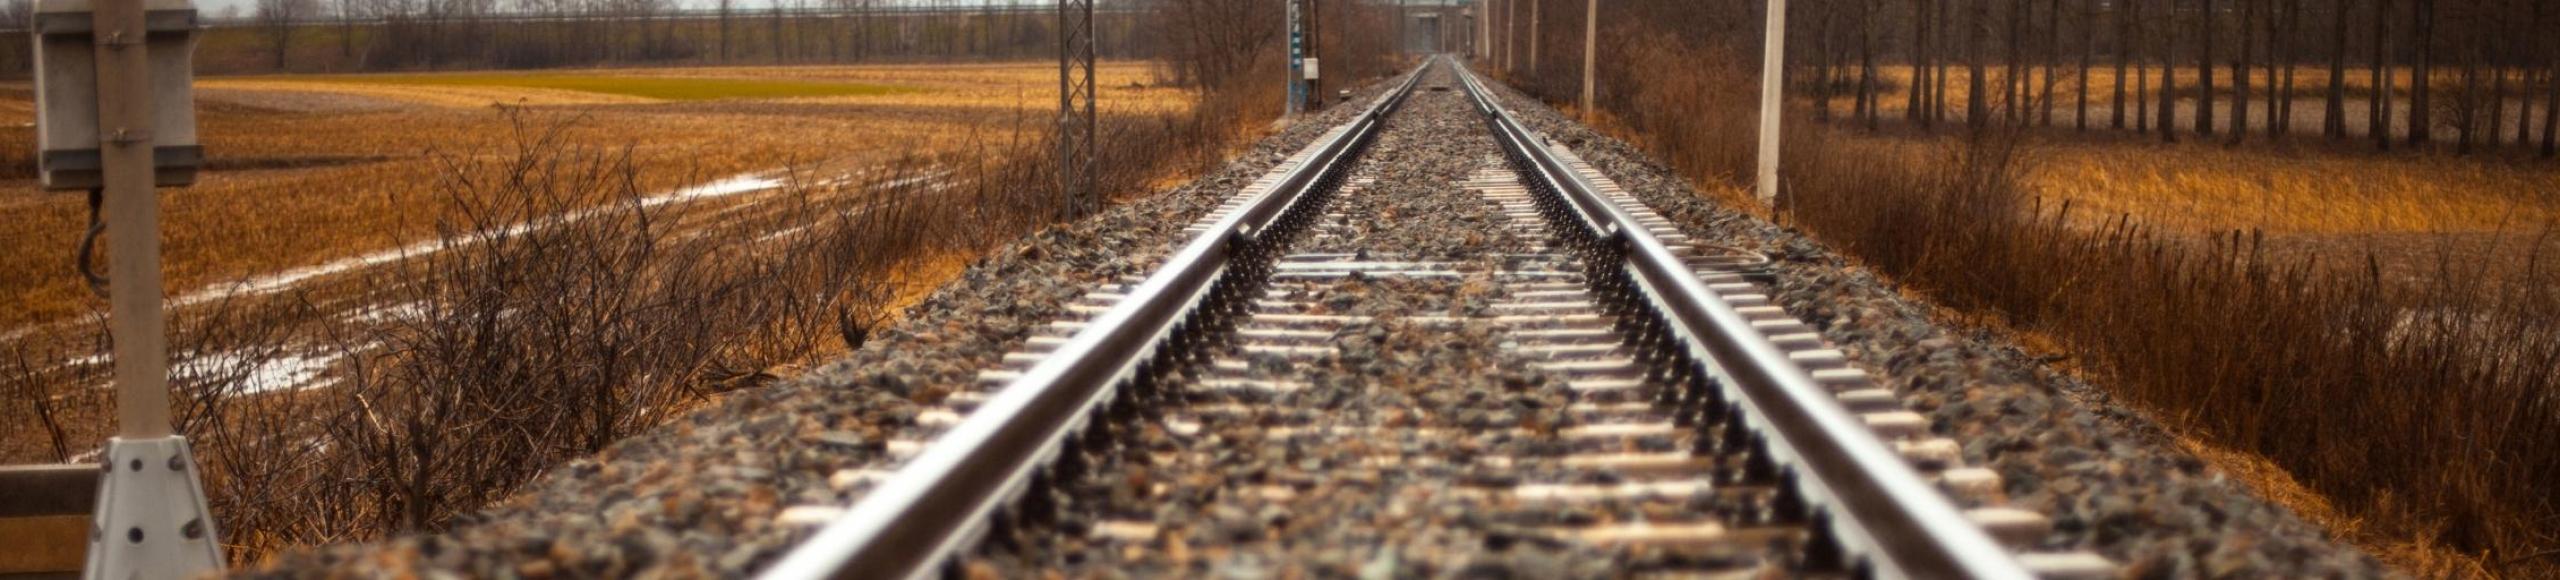 Foto van een rails voor de trein